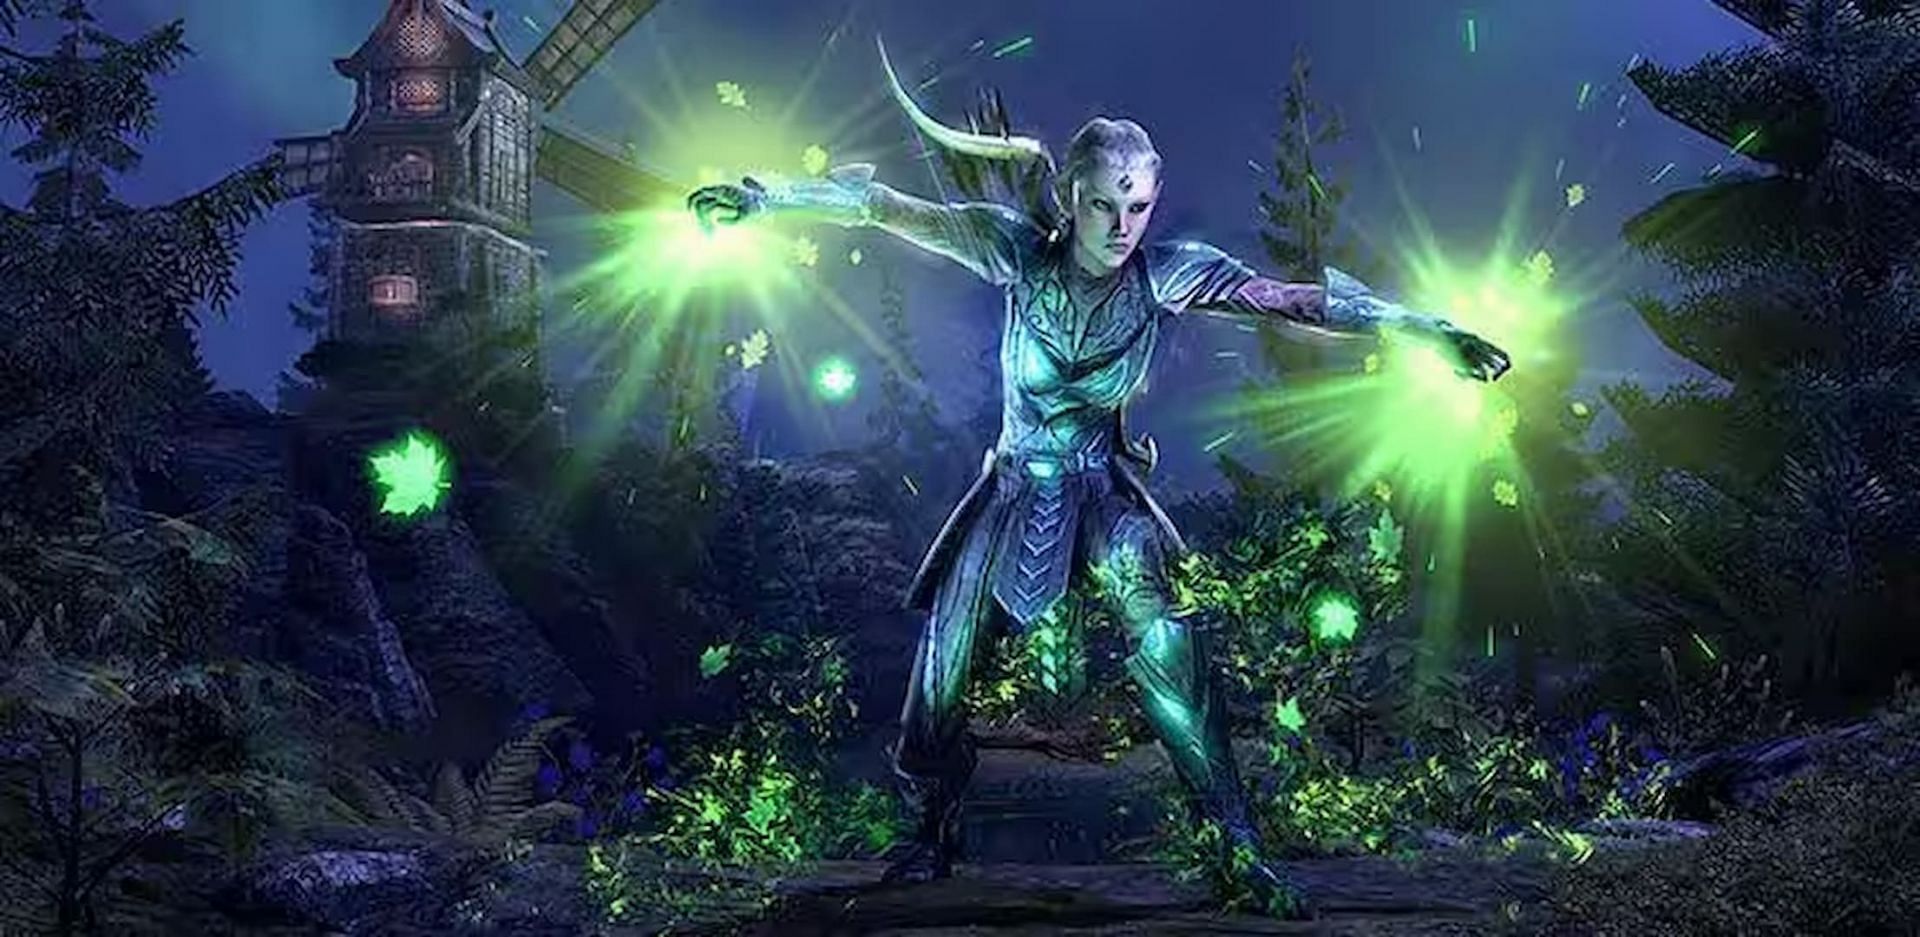 Healers provide support to their allies in The Elder Scrolls Online (Image via ZeniMax Online Studios)